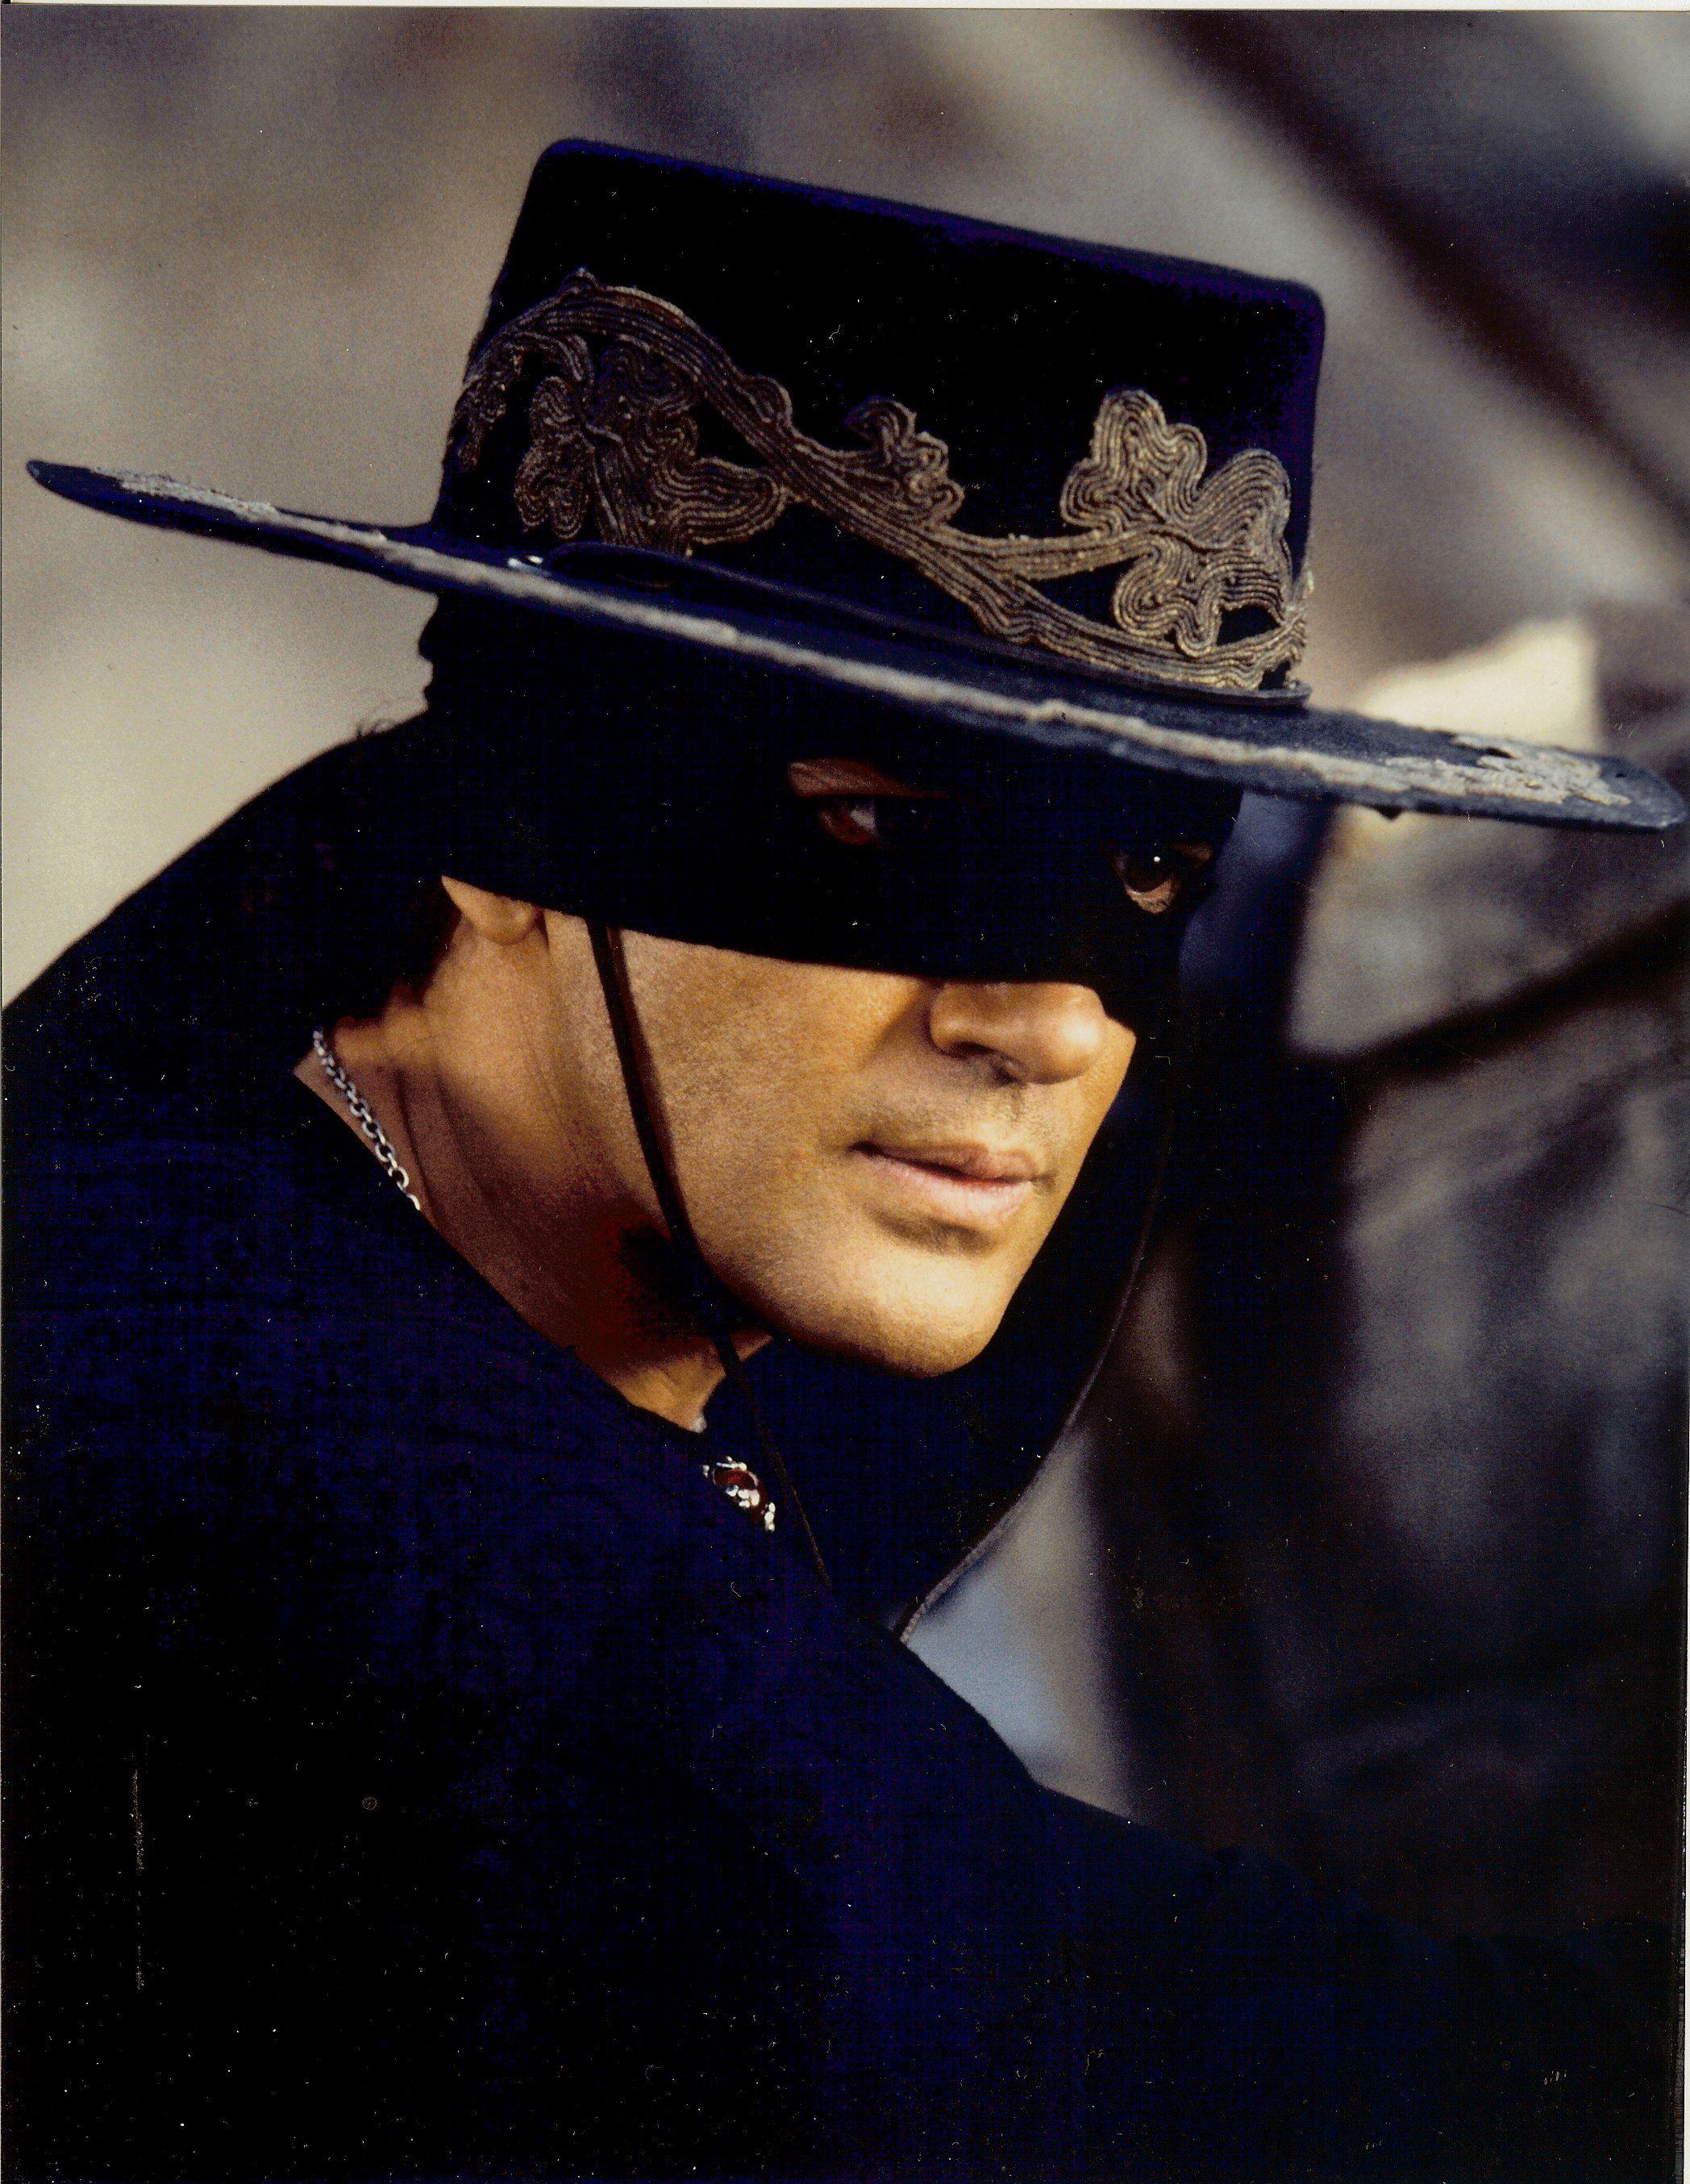 Antonio Banderas as Zorro in 